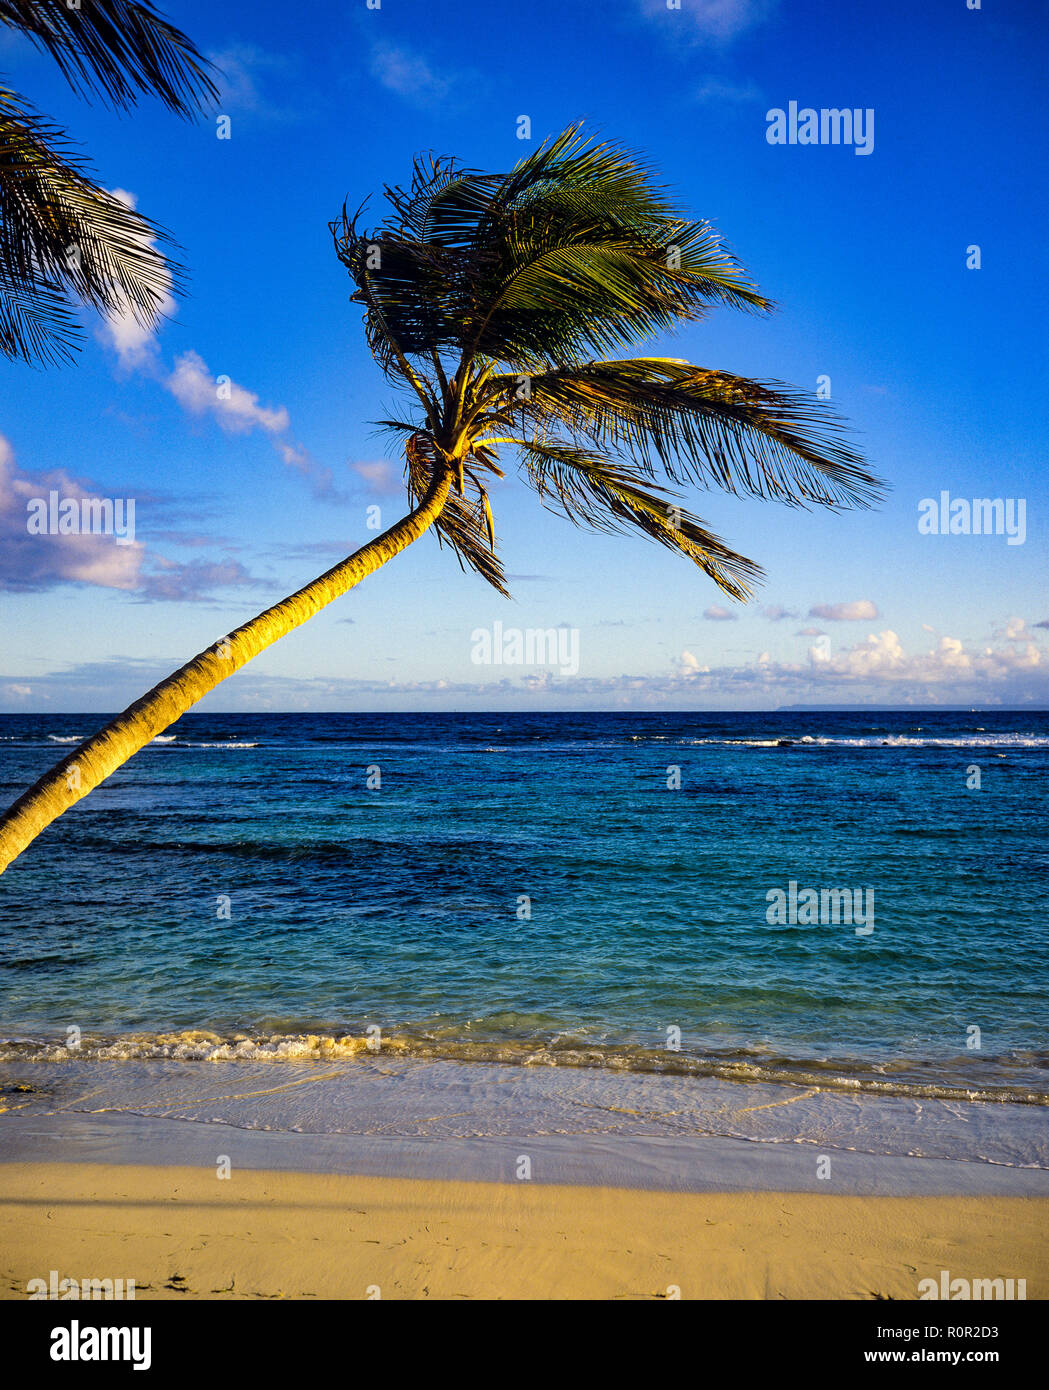 Palma solitaria, spiaggia tropicale, mare caraibico, orizzonte, Guadalupa, Indie occidentali francesi, piccole Antille Foto Stock